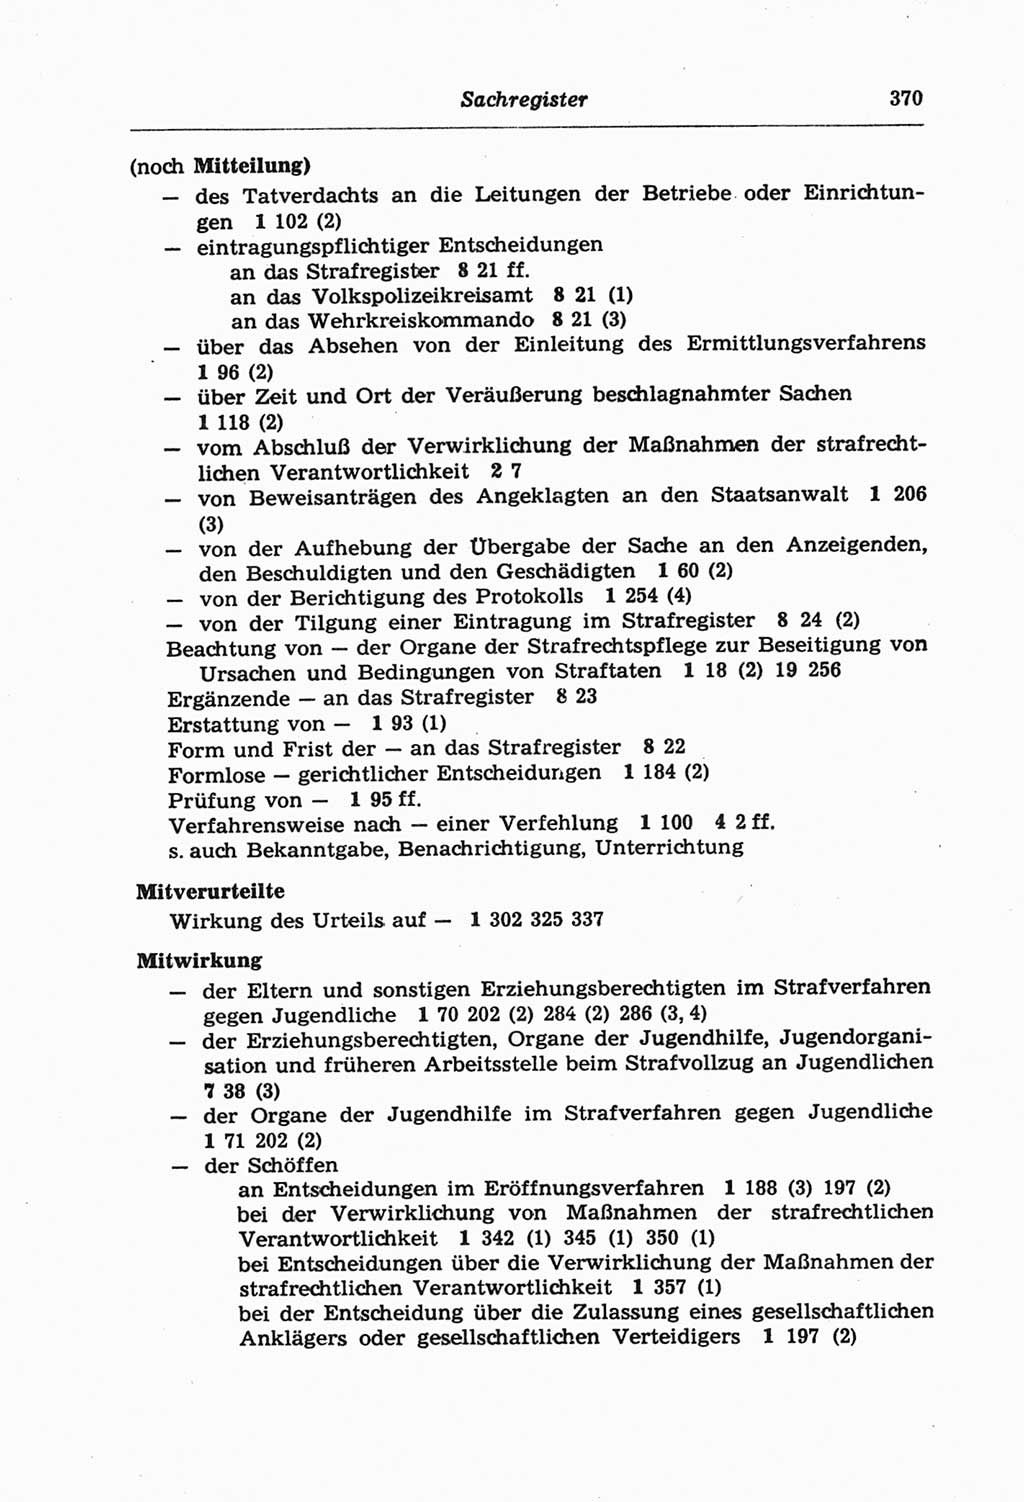 Strafprozeßordnung (StPO) der Deutschen Demokratischen Republik (DDR) und angrenzende Gesetze und Bestimmungen 1968, Seite 370 (StPO Ges. Bstgn. DDR 1968, S. 370)